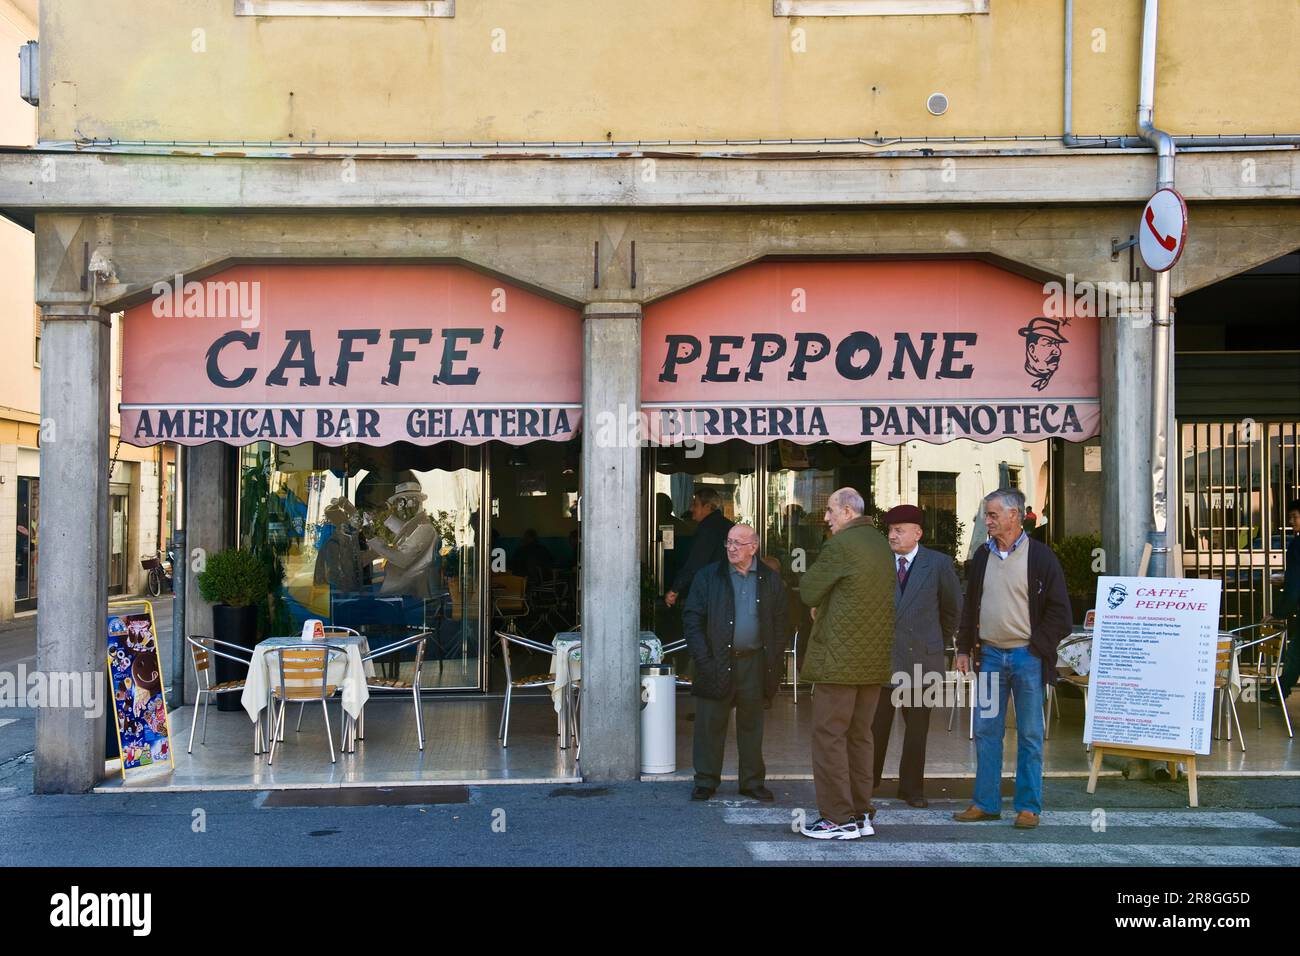 Caffe Peppone, Brescello (re) Stock Photo